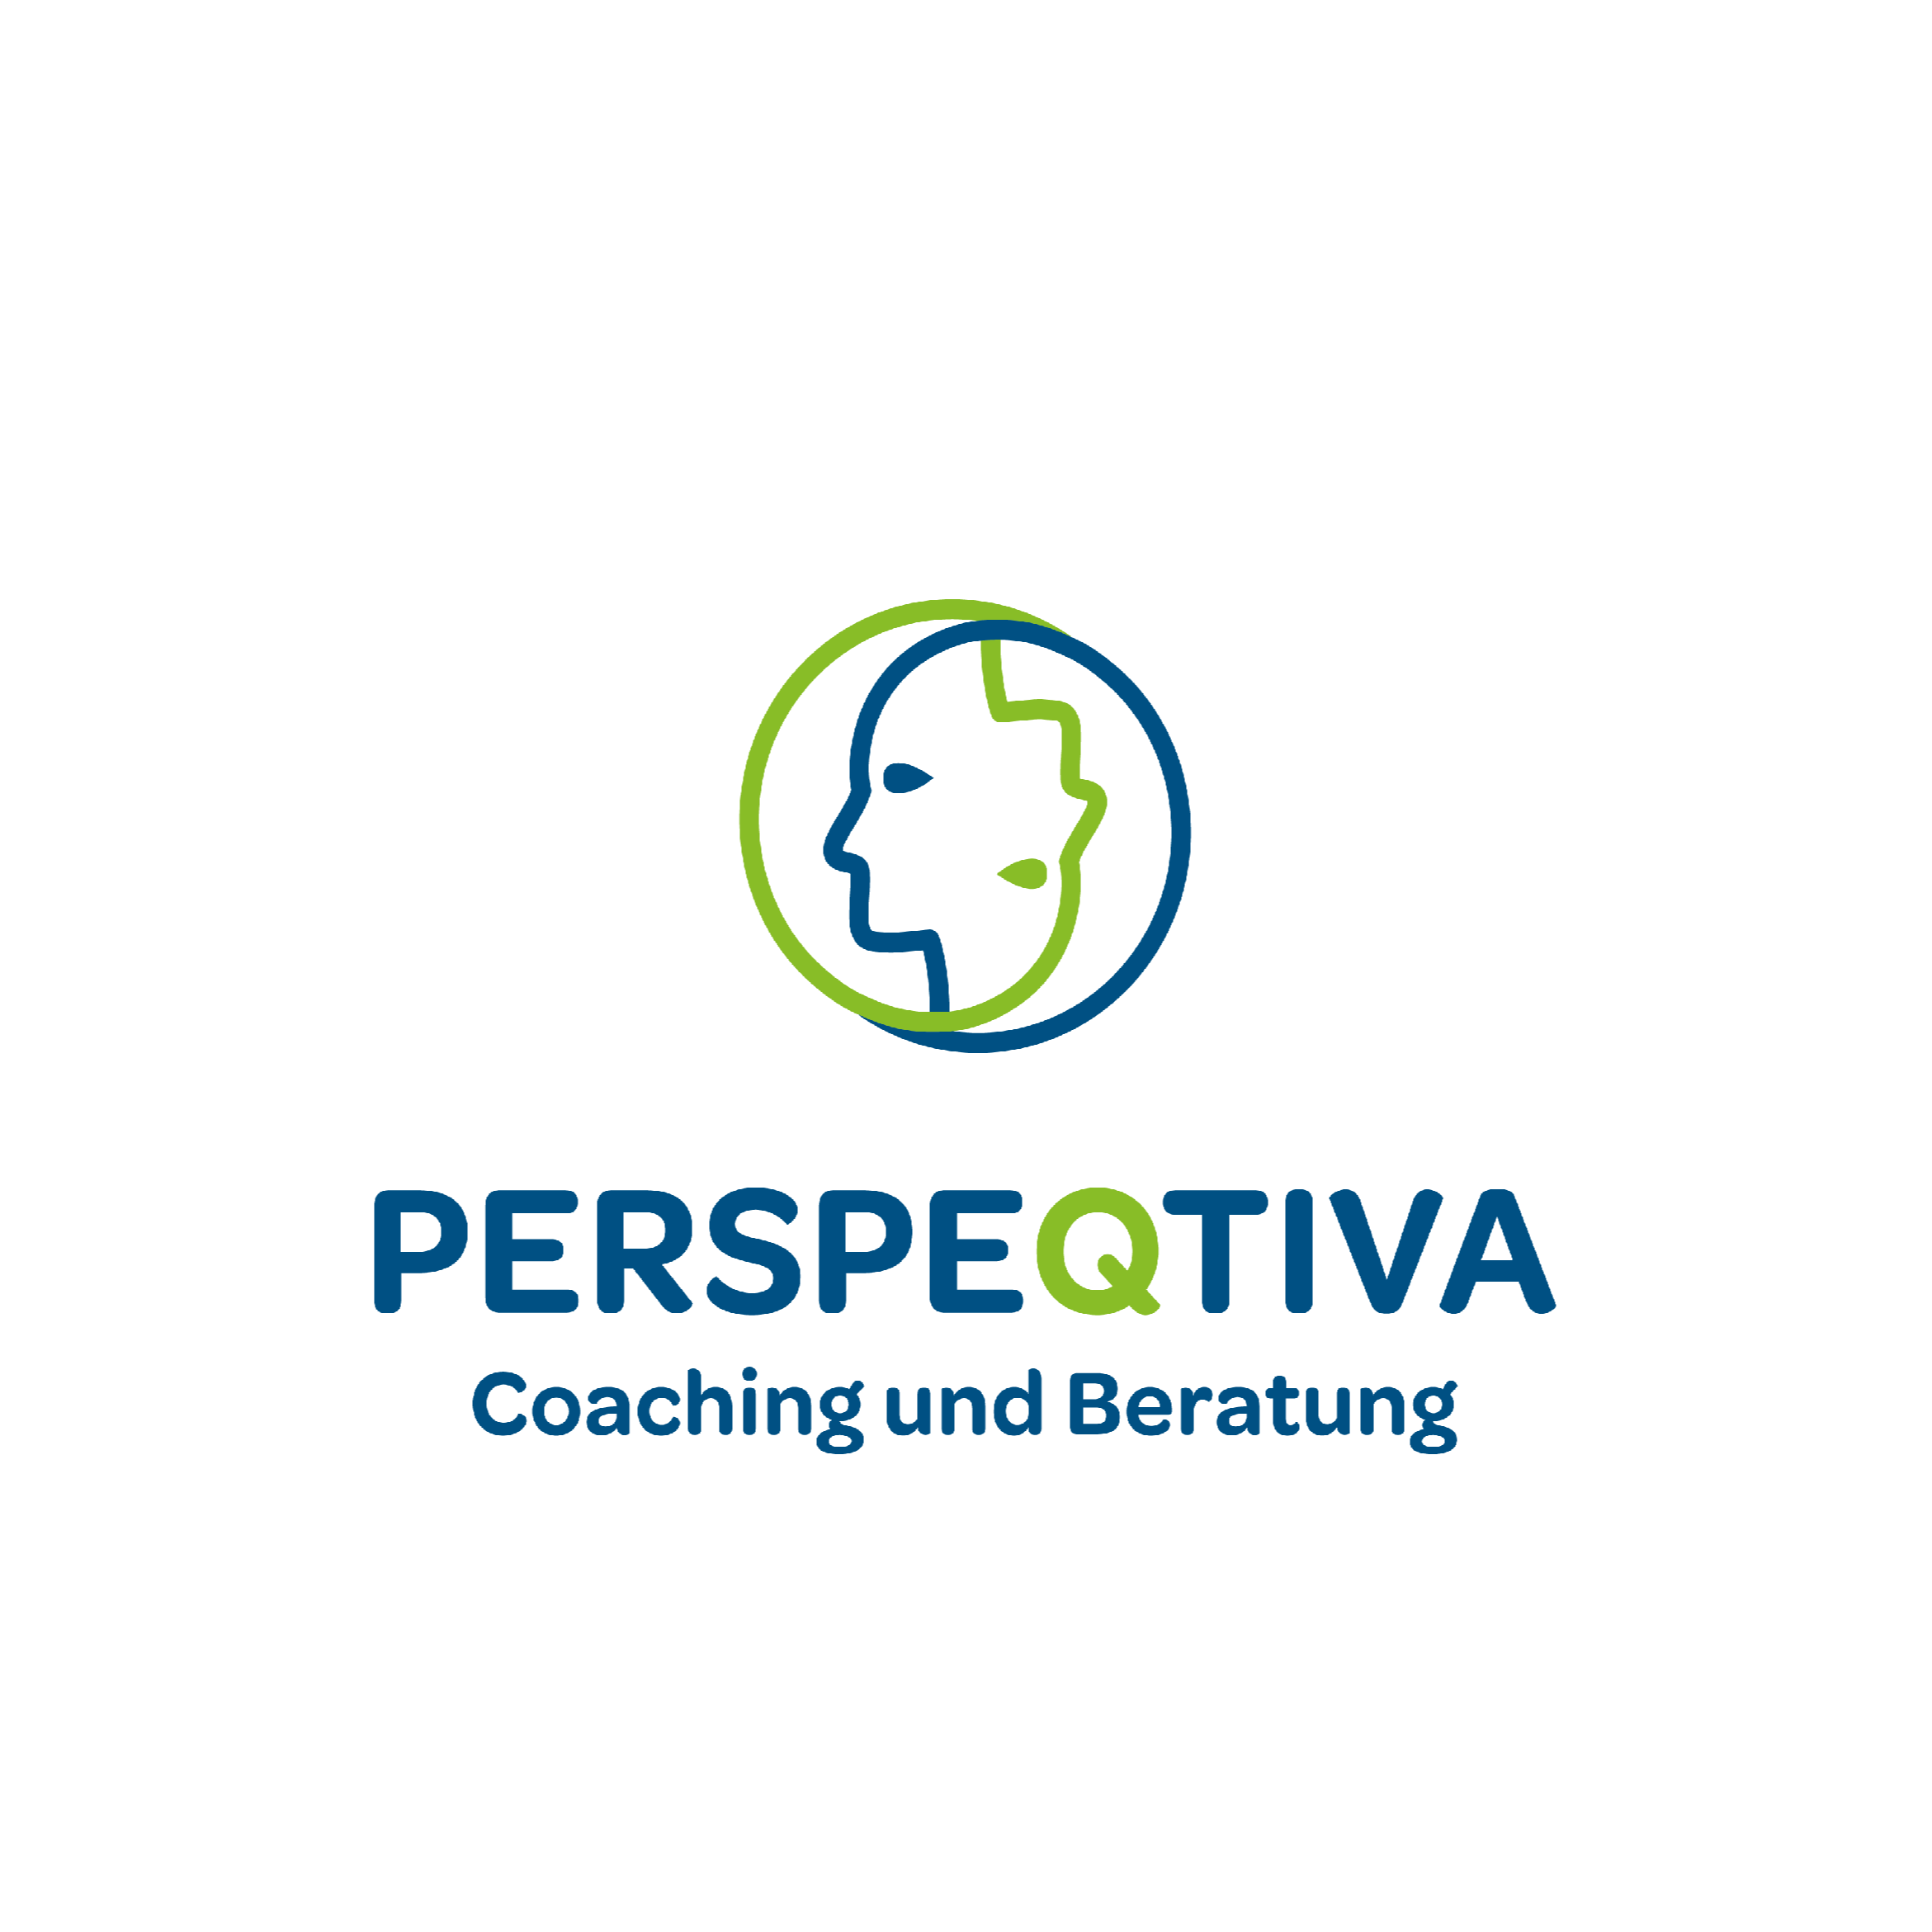 Perspeqtiva - Coaching und Beratung in Bonn - Logo